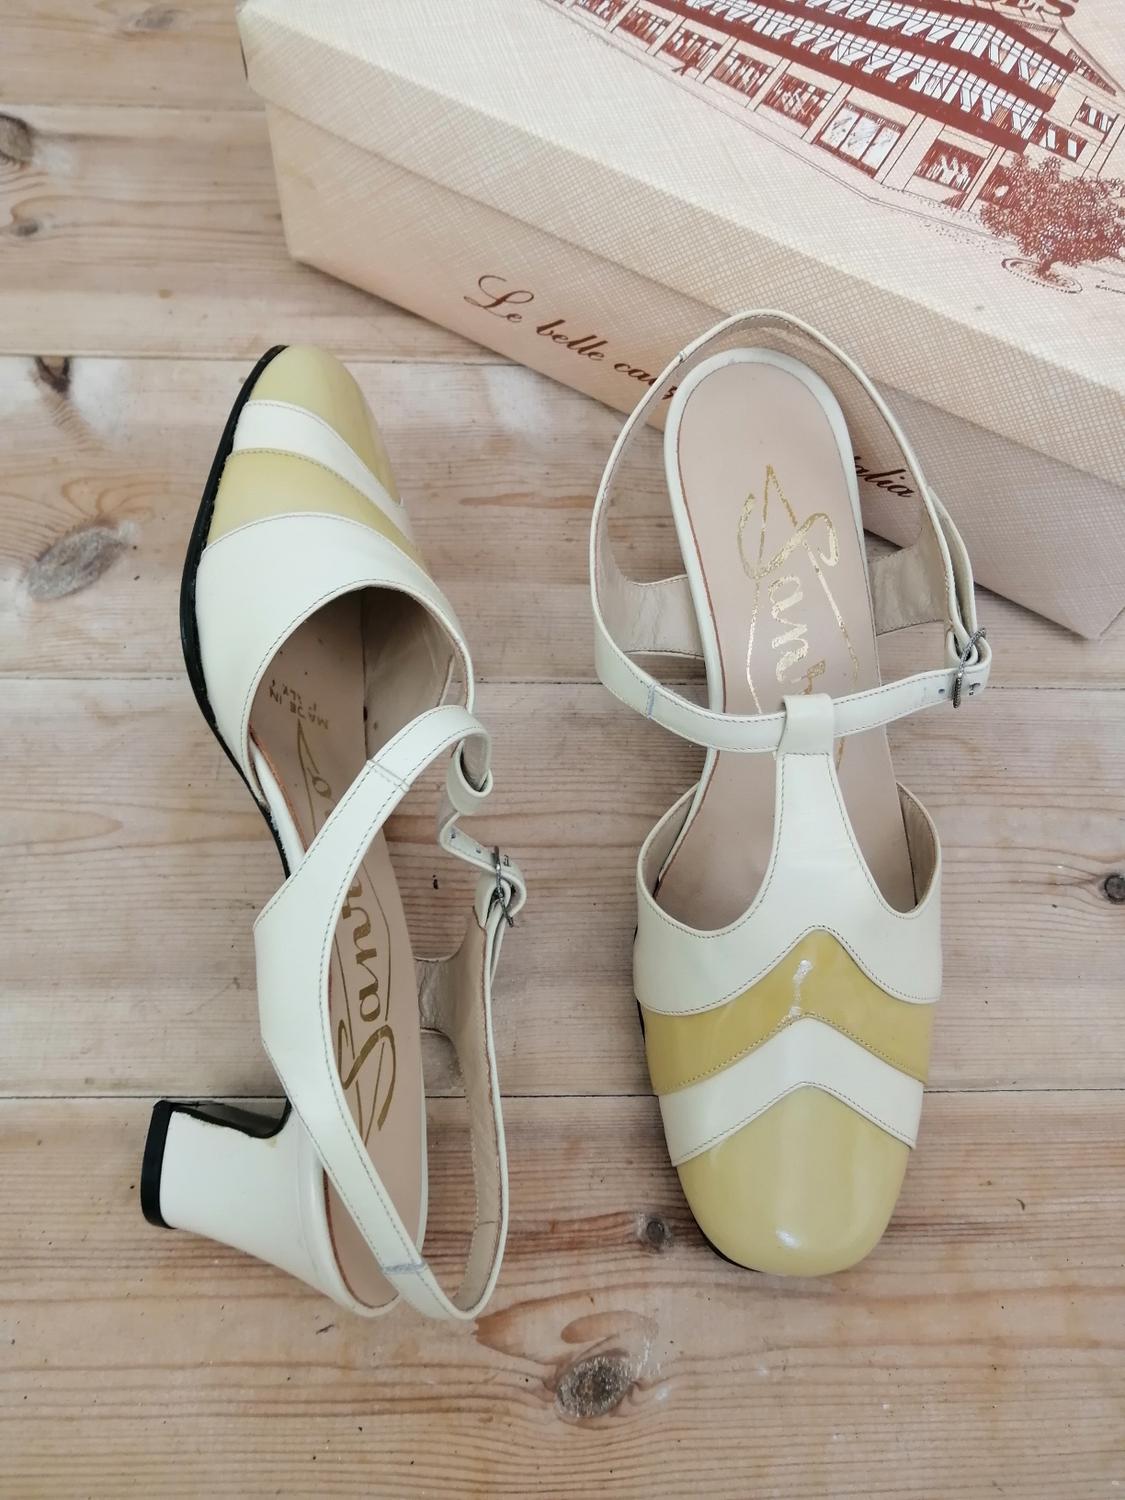 Vintage Sanremo beige vit sandalett rem stl 37,5